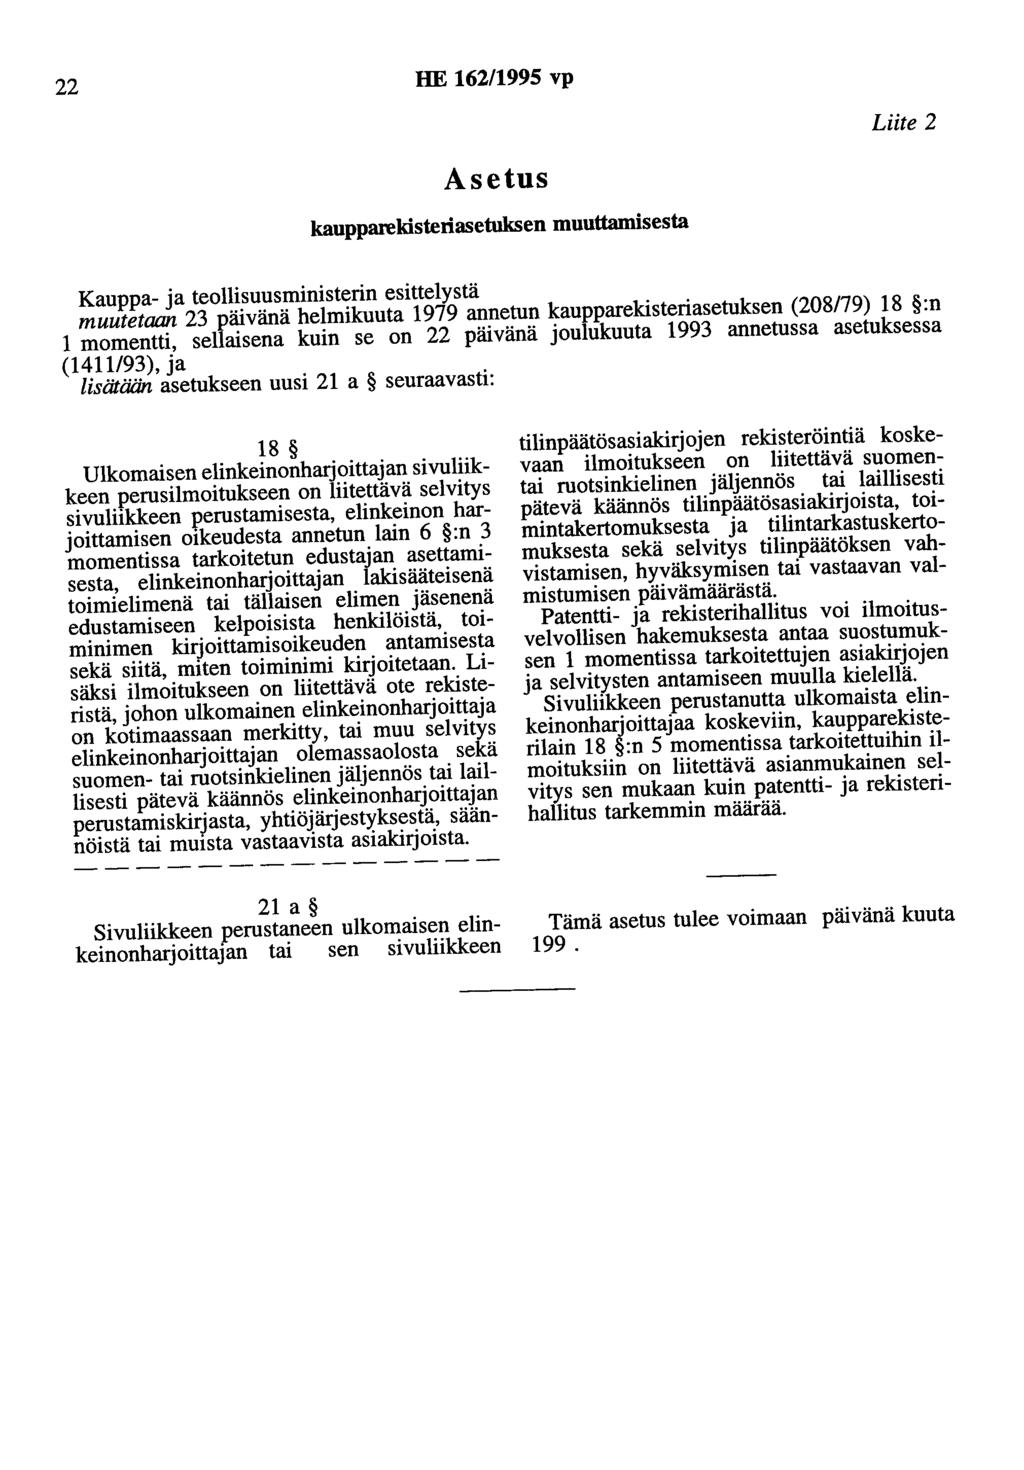 22 HE 162/1995 vp Asetus kaupparekisteriasetuksen muuttamisesta Liite 2 Kauppa- ja teollisuusministerin esittelystä muutetaan 23 päivänä helmikuuta 1979 annetun kaupparekisteriasetuksen (208179) 18